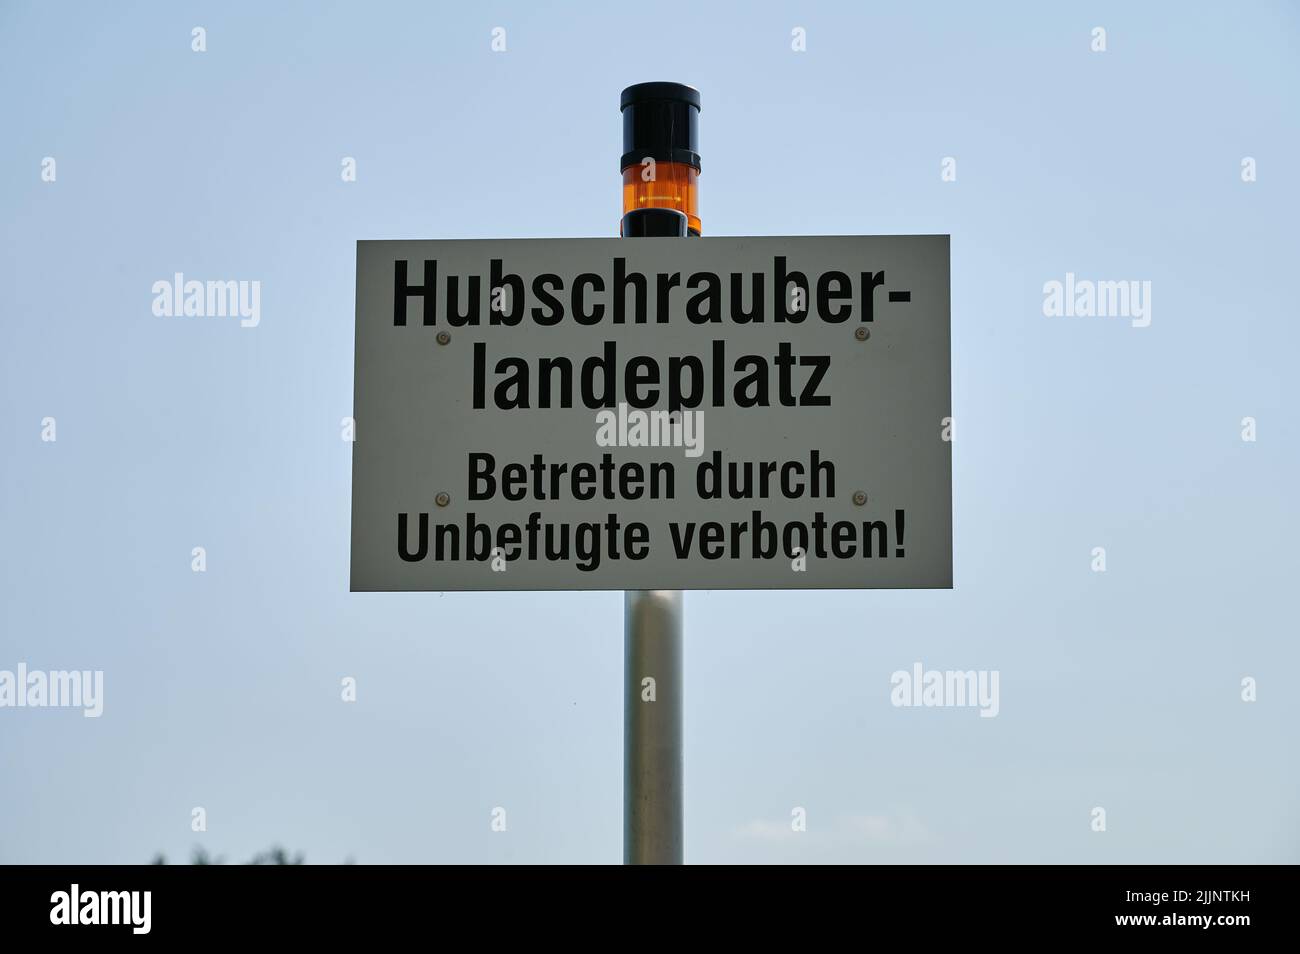 Hubschrauberlandeplatz - Betreten durch Unbefugte verboten Stock Photo